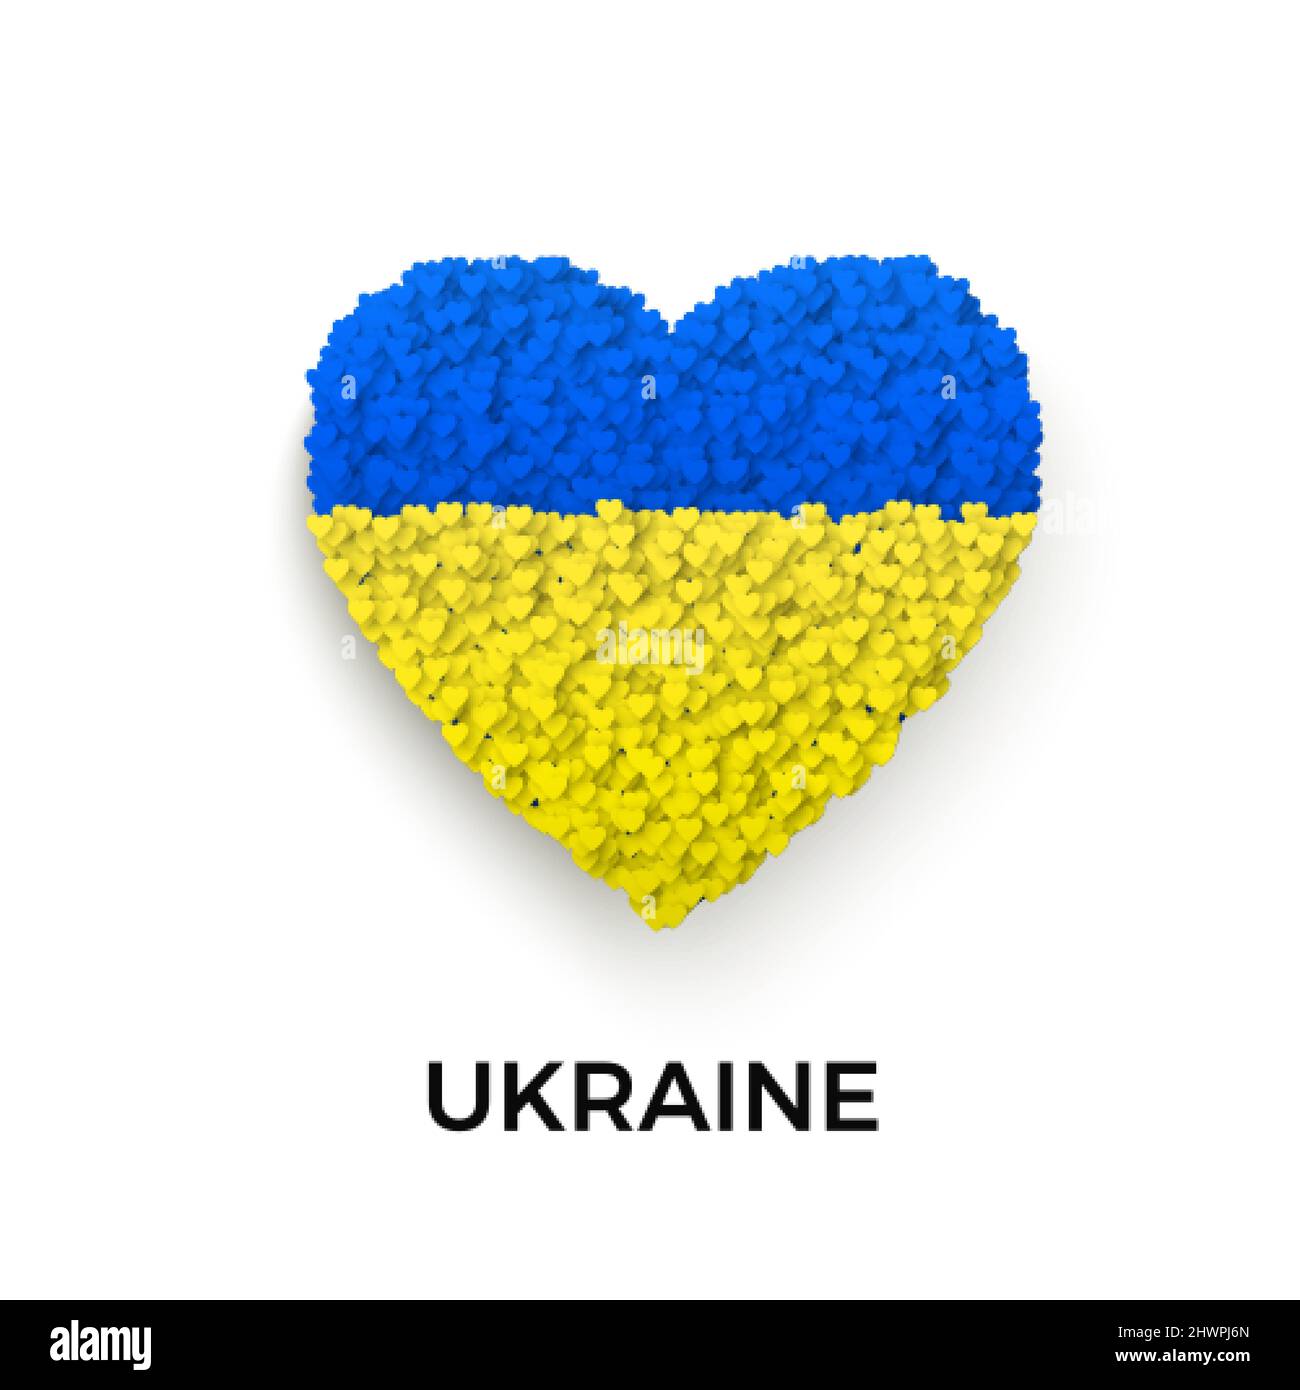 Stop the war in Ukraine Vorlage. Blau und gelb Ukraine Flagge in Herz Silhouette. Konzept von Freiheit und Frieden. Beenden Sie Krieg und militärische Aggression. Ve Stock Vektor